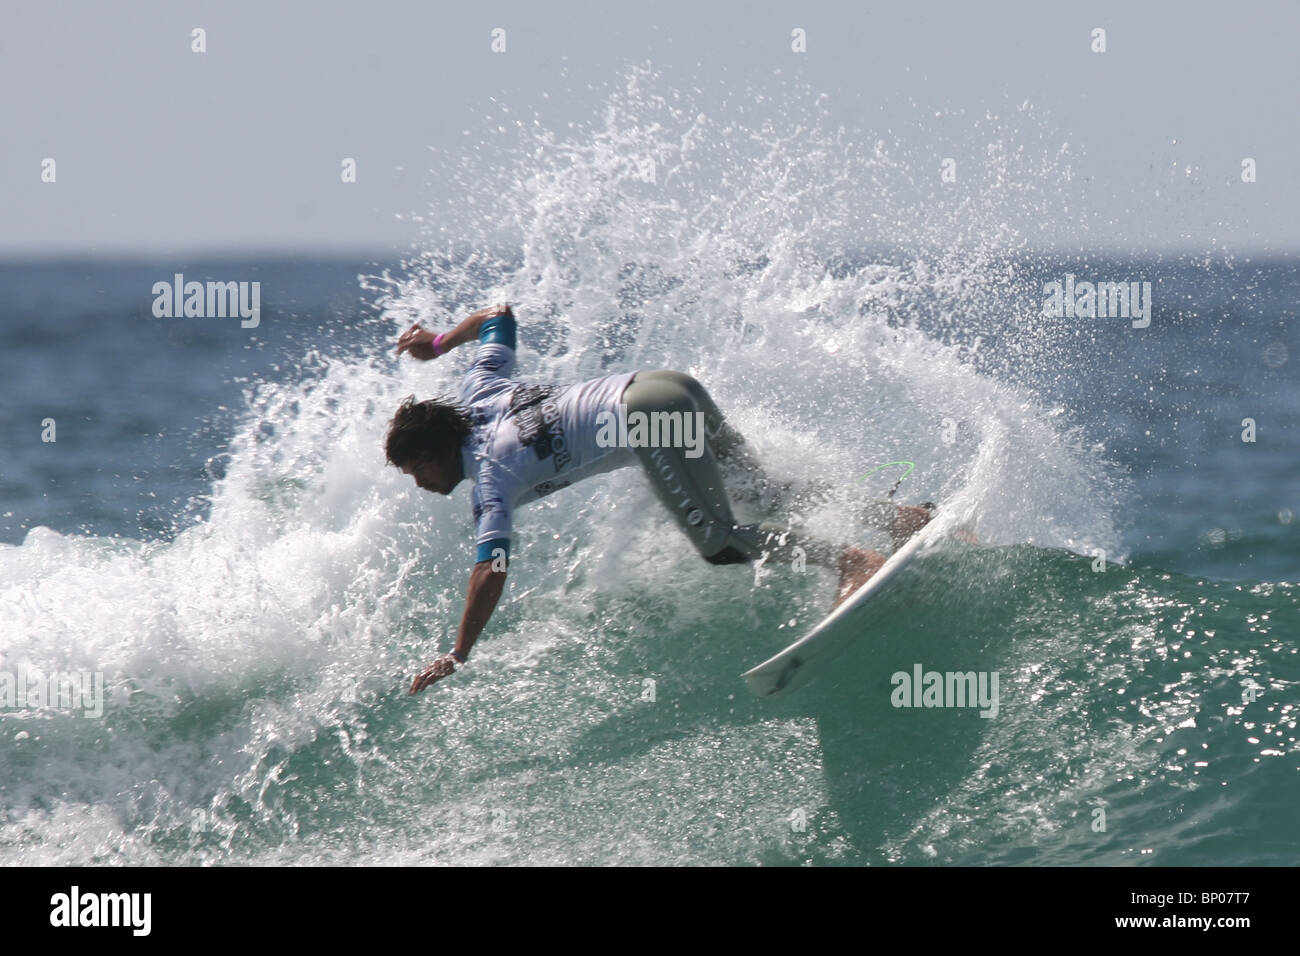 El neozelandés, Jay Quinn, finalista en el concurso Relenless Boardmasters surf, Newquay, Cornwall, 8 de agosto. Foto de stock